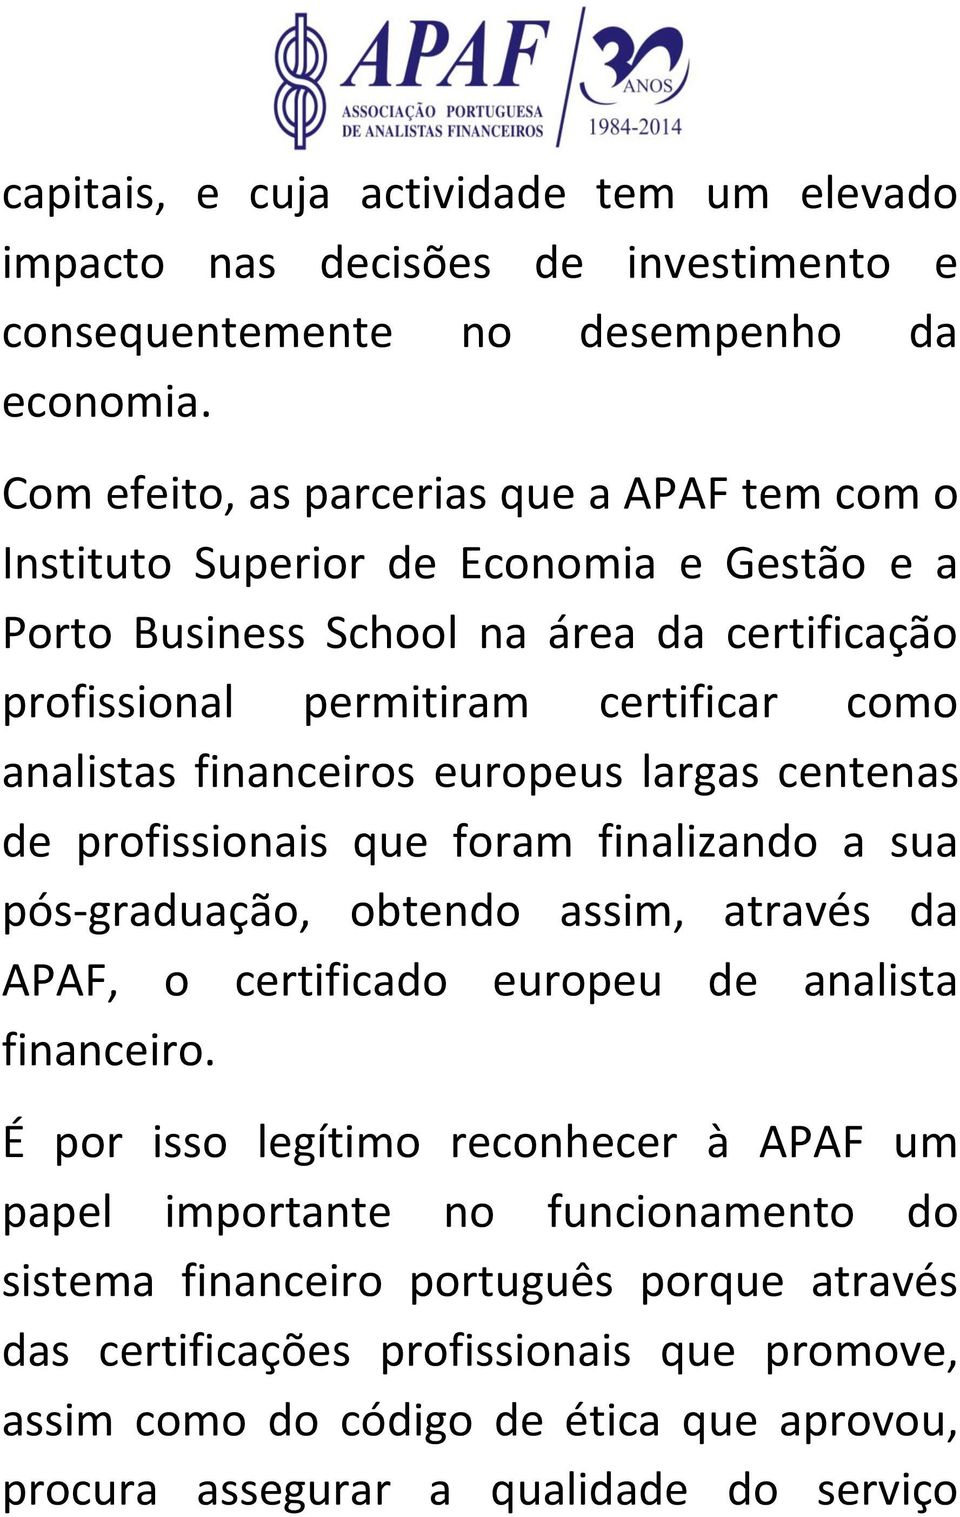 analistas financeiros europeus largas centenas de profissionais que foram finalizando a sua pós-graduação, obtendo assim, através da APAF, o certificado europeu de analista financeiro.